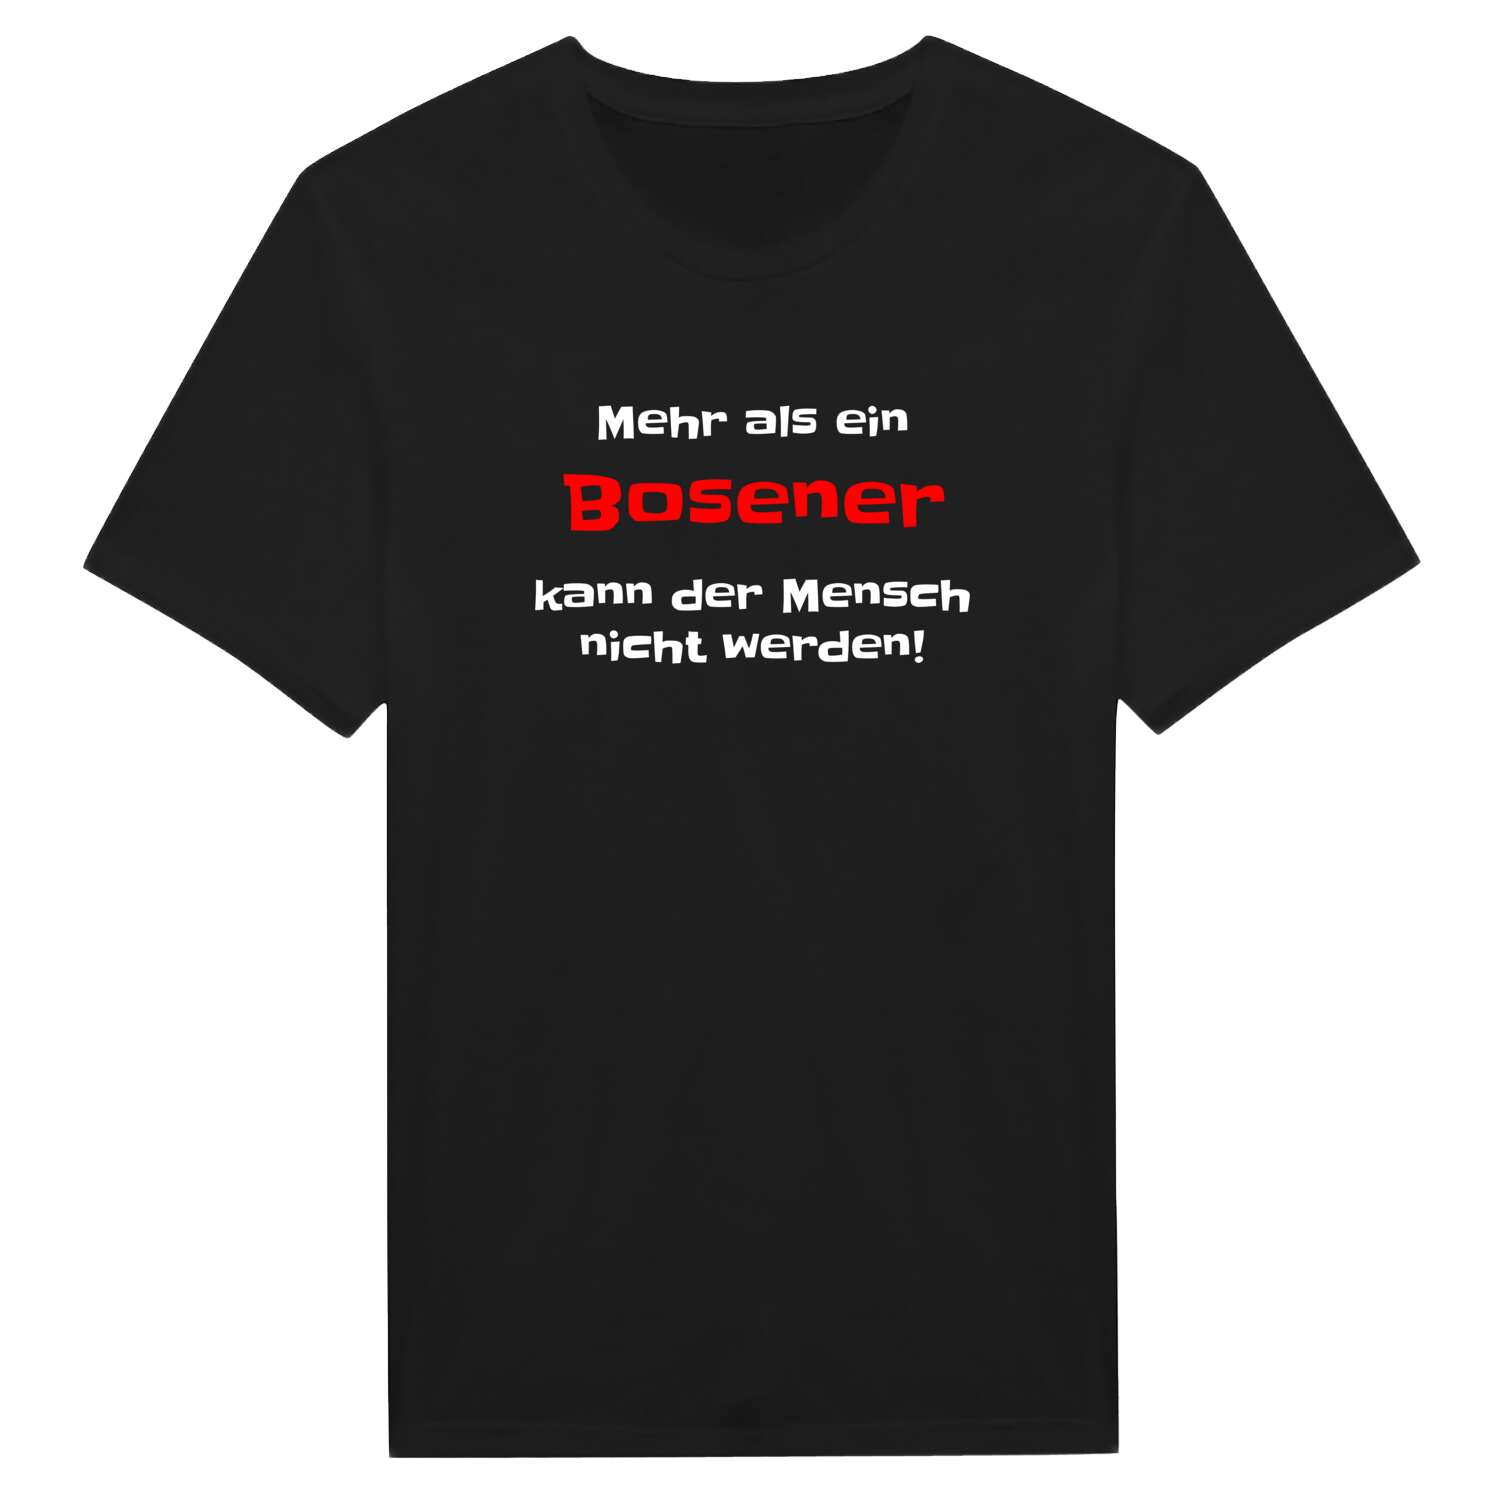 Bosen T-Shirt »Mehr als ein«